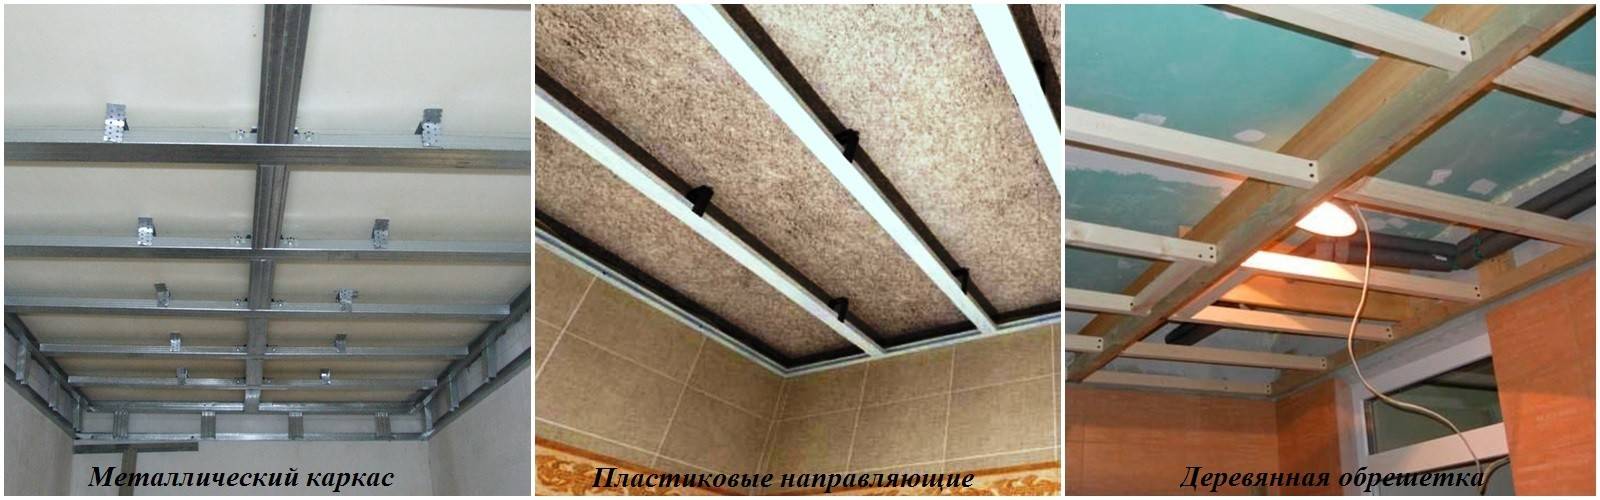 Как сделать потолок из панелей пвх своими руками, особенности отделки и устройства конструкции, детальное фото +видео